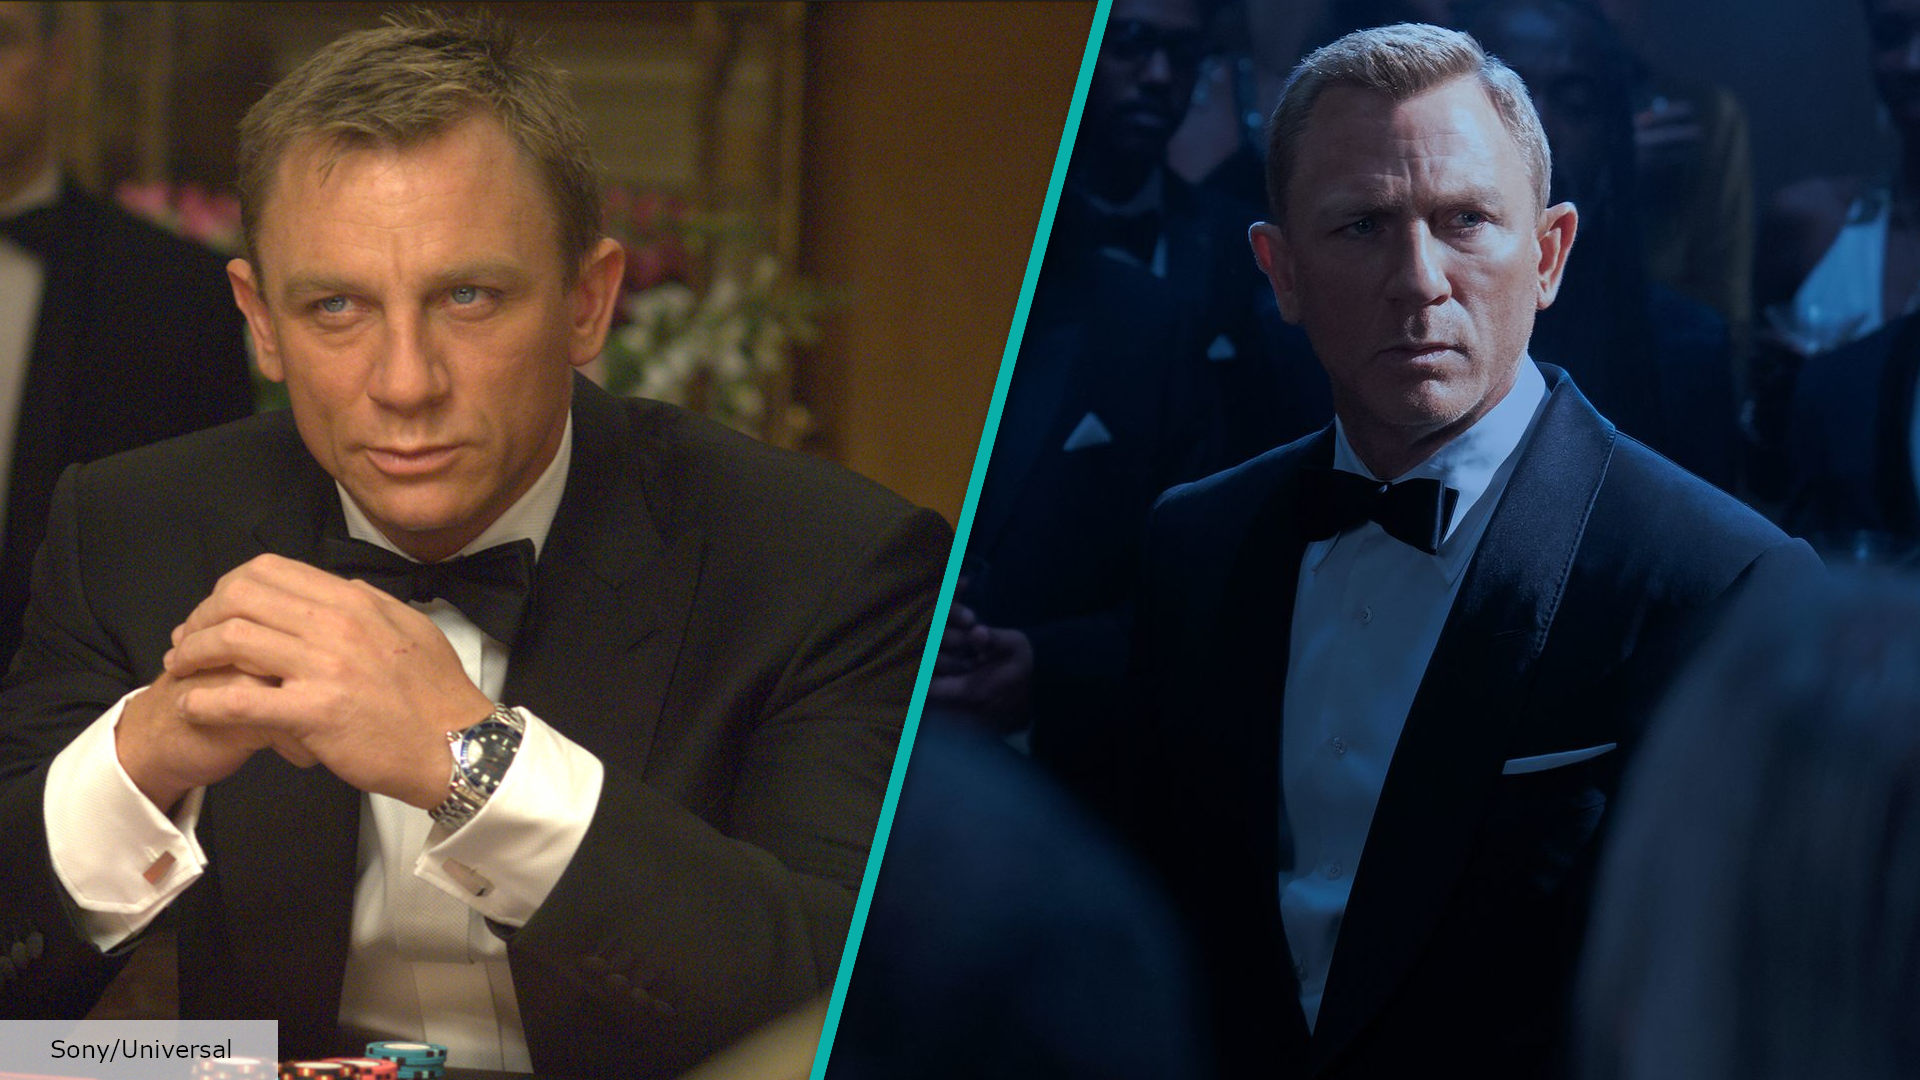 The James Bond franchise should end with Daniel Craig